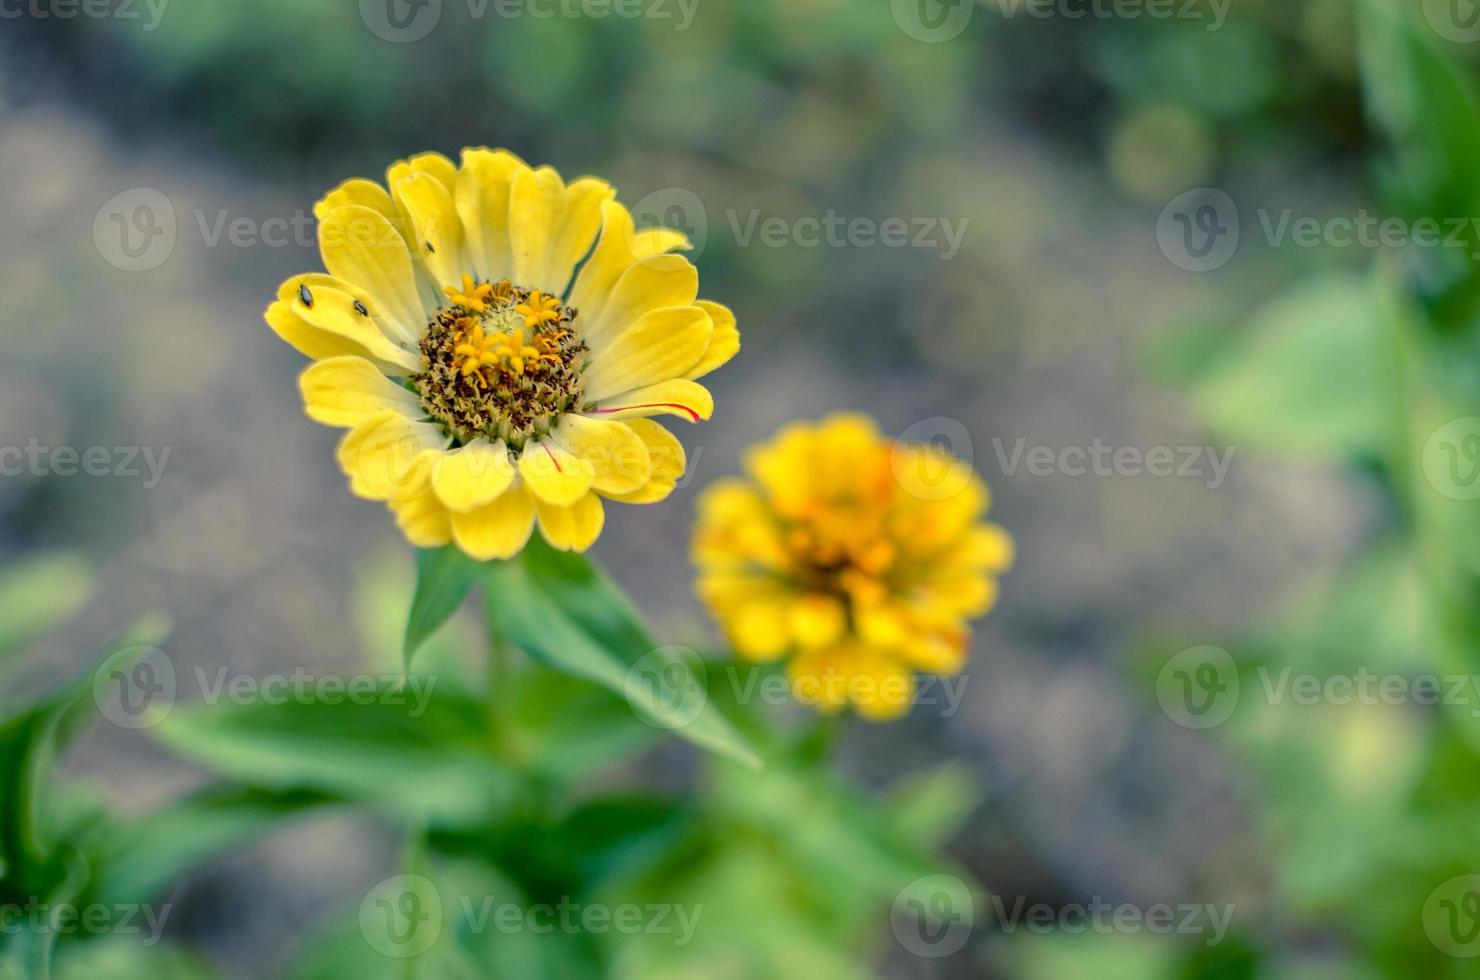 fiori gialli di zinnia con backgrund blured in estate foto